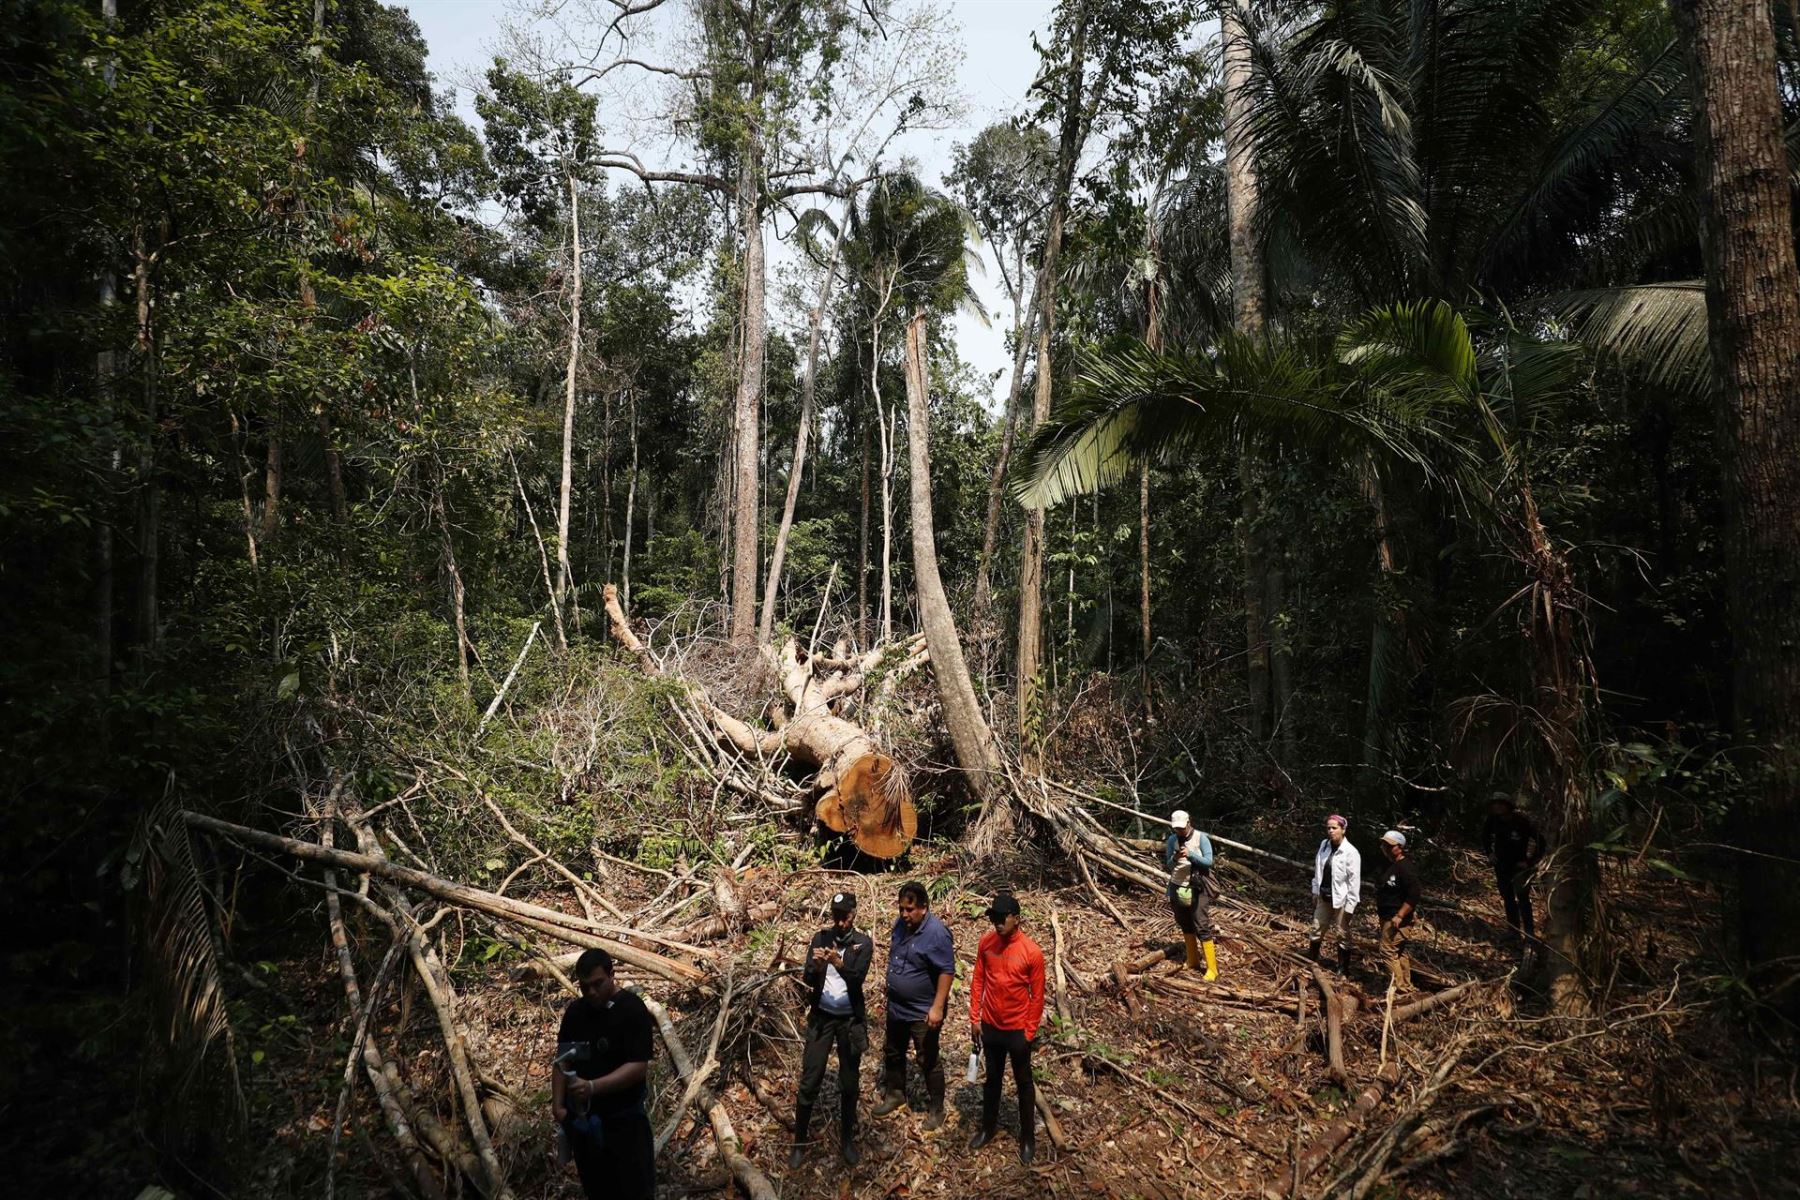 Defensores ambientales: la creciente amenaza que reciben por proteger la Amazonía